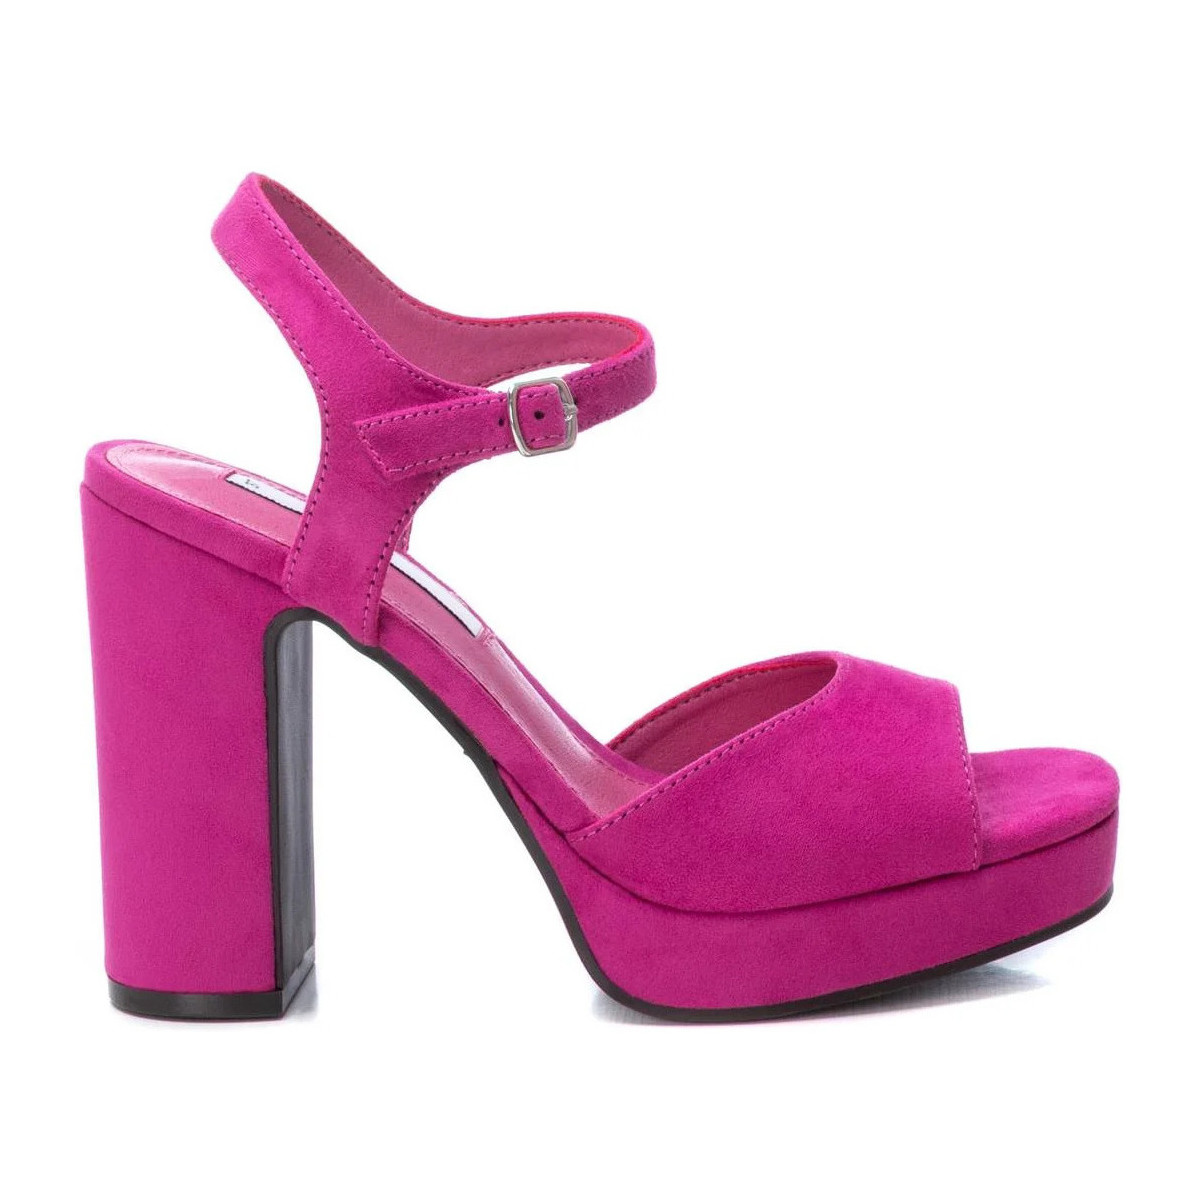 Chaussures Femme Sandales et Nu-pieds Xti 04529106 Rose